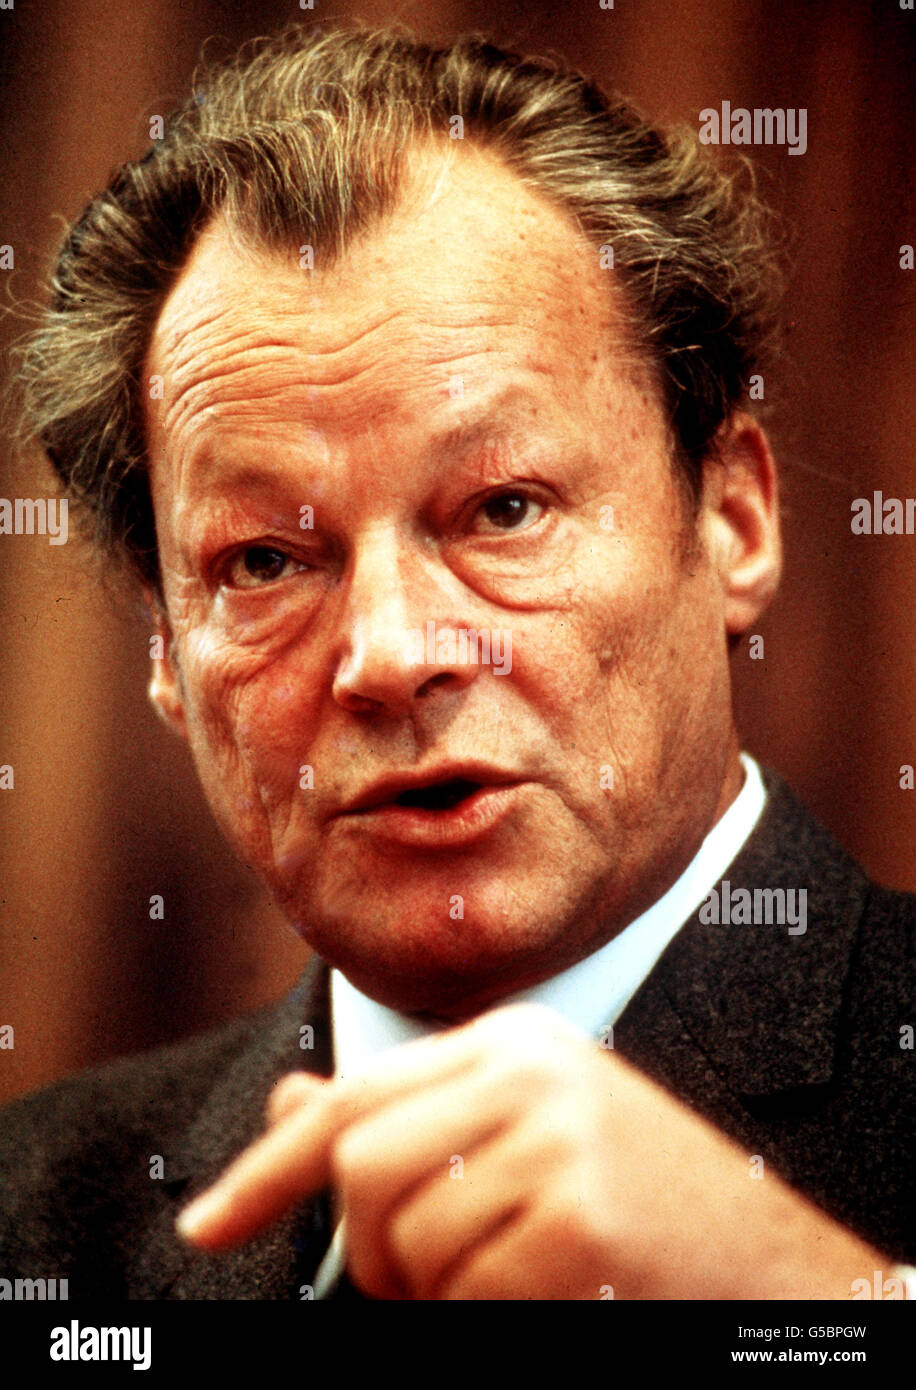 Willi Brandt, der Bundeskanzler der Bundesrepublik Deutschland. 1973: Willi Brandt, der Bundeskanzler der Bundesrepublik Deutschland. Stockfoto